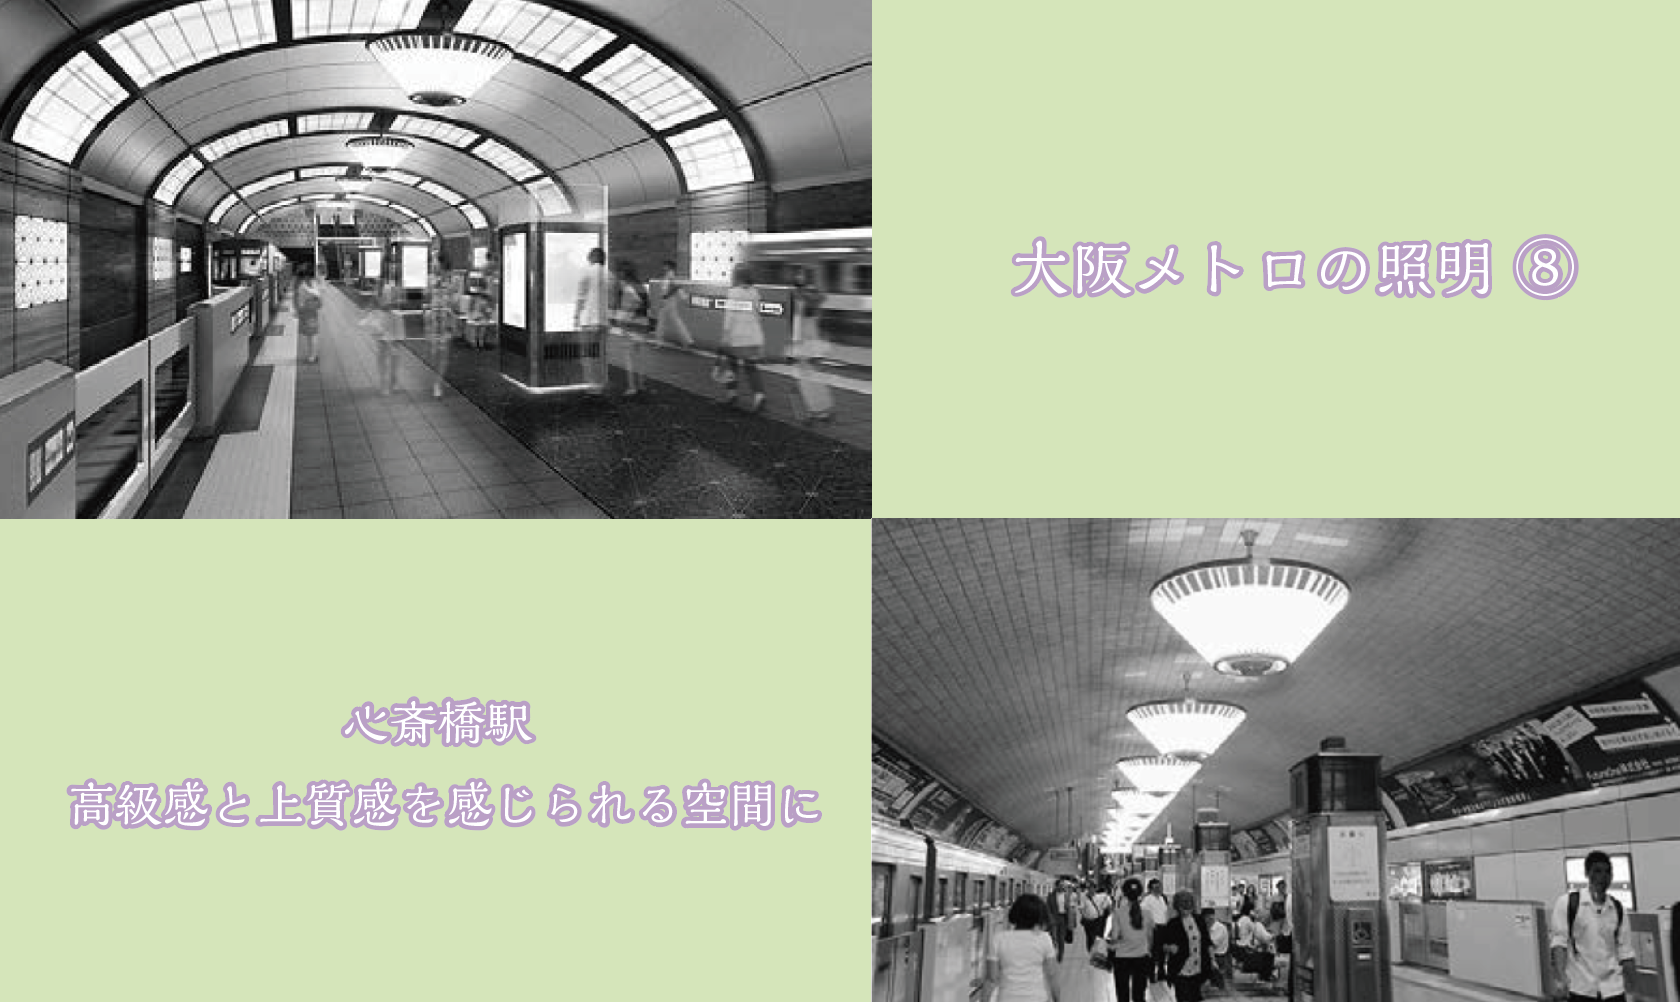 大阪メトロの照明 ⑧ 心斎橋駅 高級感と上質感を感じられる空間にの画像